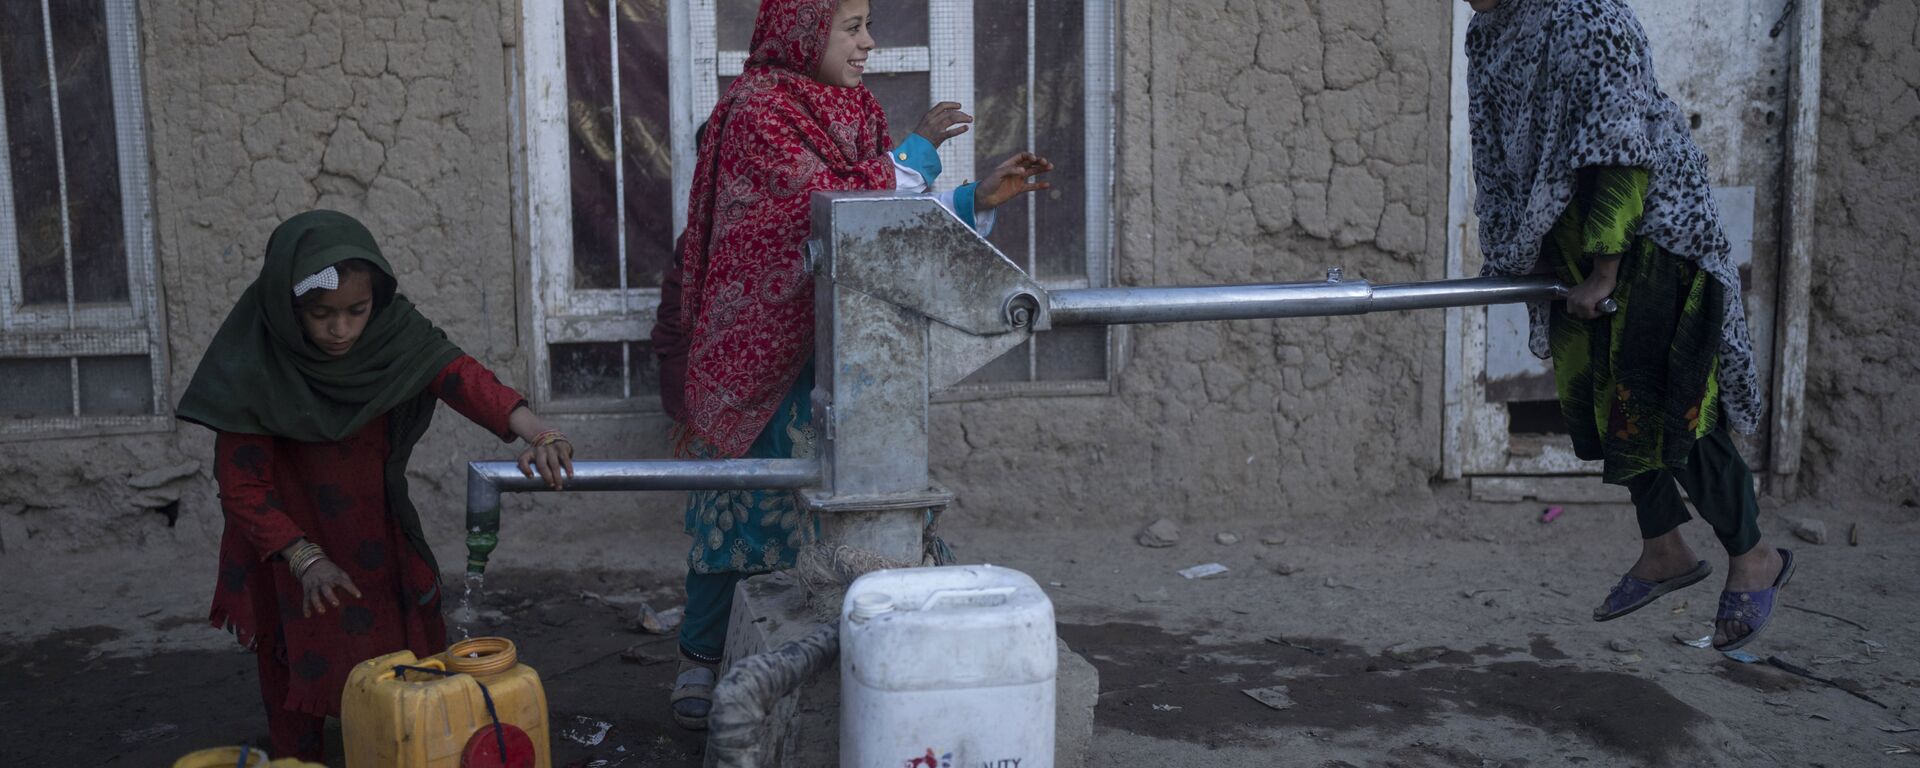 فتيات يملأن حاويات بالمياه باستخدام مضخة يدوية في مخيم للنازحين في كابول، أفغانستان، 15 نوفمبر 2021. - سبوتنيك عربي, 1920, 11.01.2022